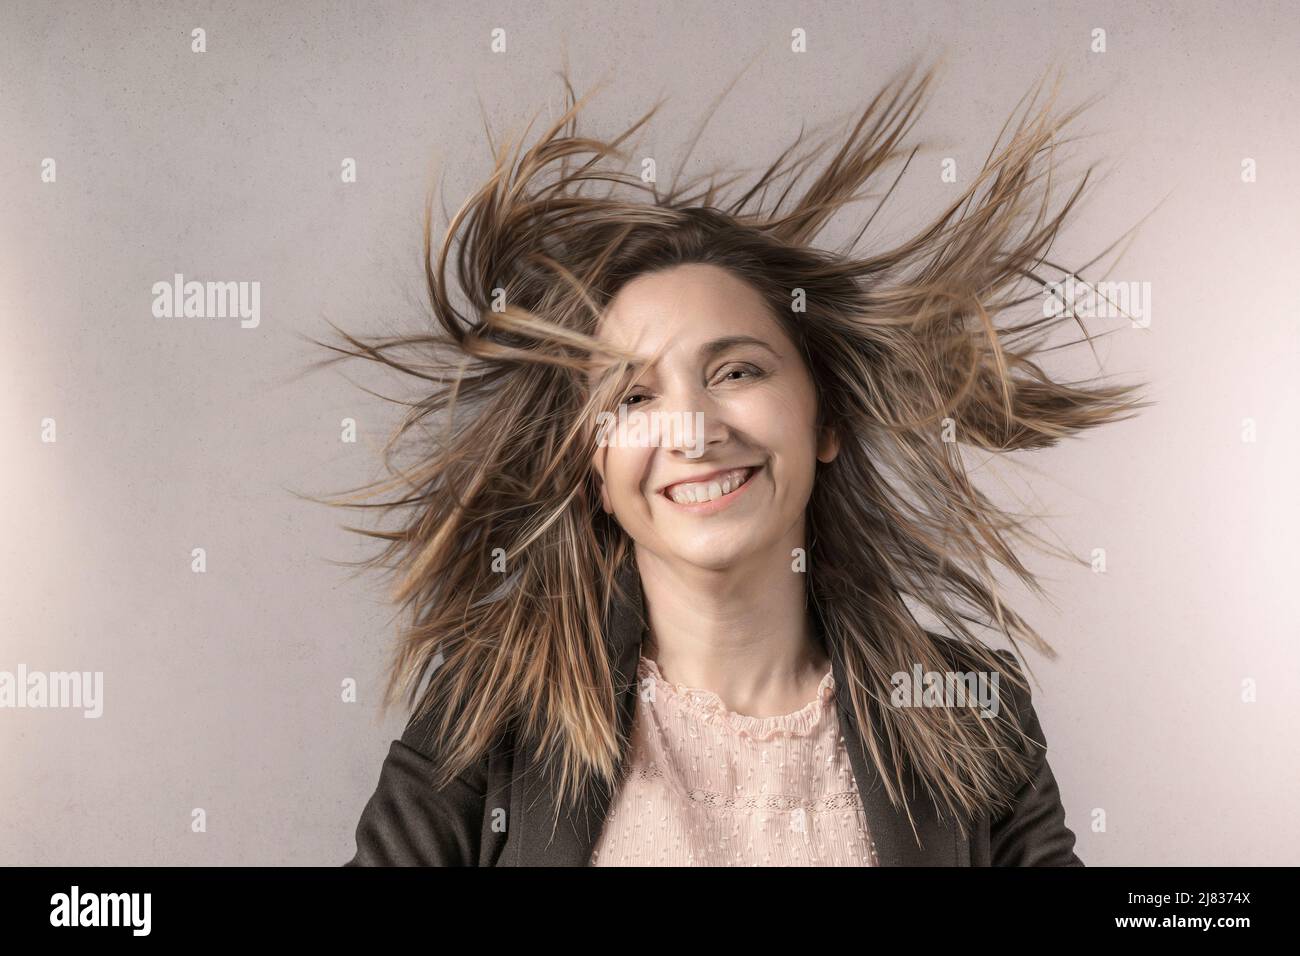 Porträt einer Frau mit im Wind wehenden Haaren, glücklicher Ausdruck Stockfoto